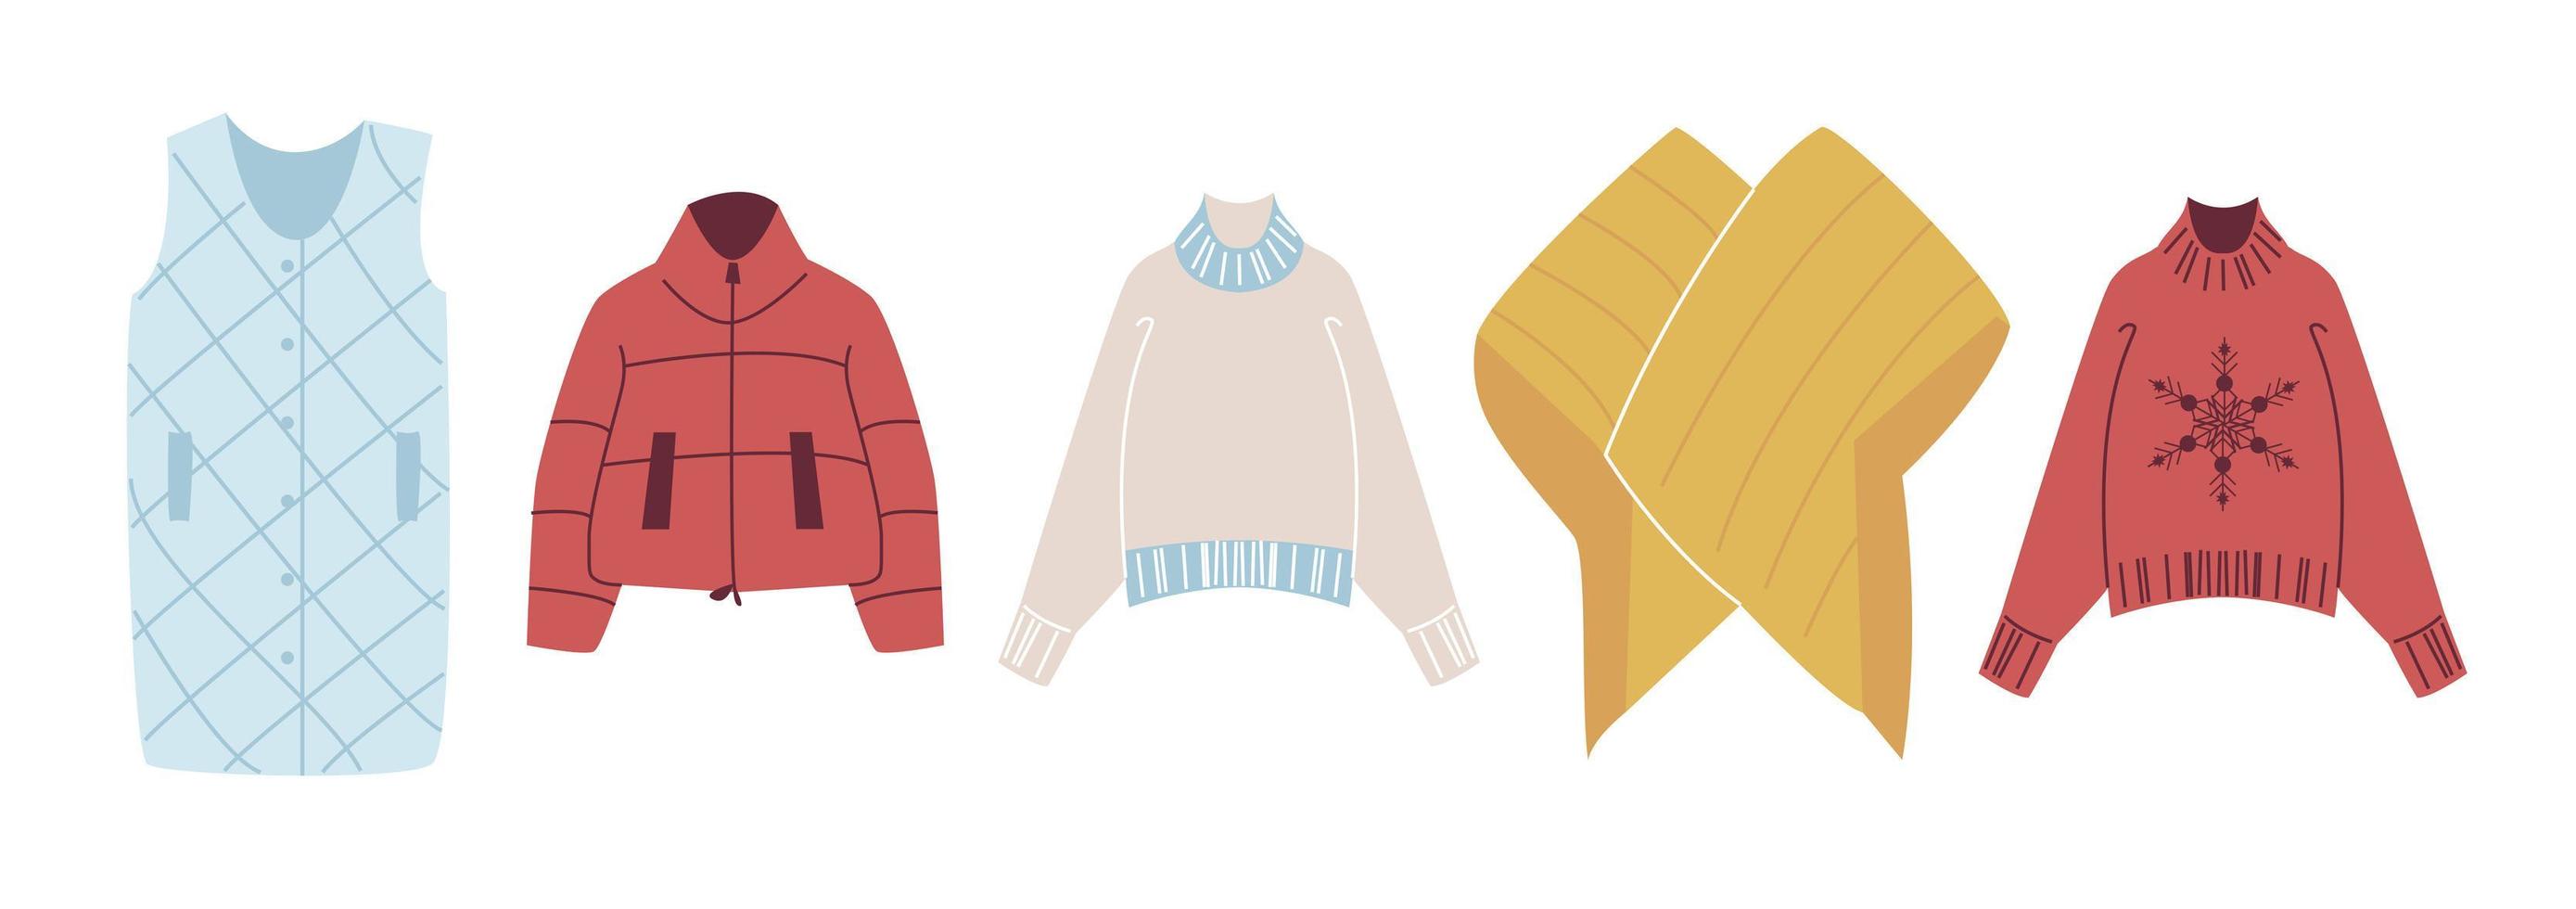 impostare vestiti invernali alla moda. piumino, piumino, maglione lavorato a maglia, giacca kimono. abbigliamento moderno per la primavera, l'autunno o l'inverno. illustrazione vettoriale in stile piatto isolato su sfondo bianco